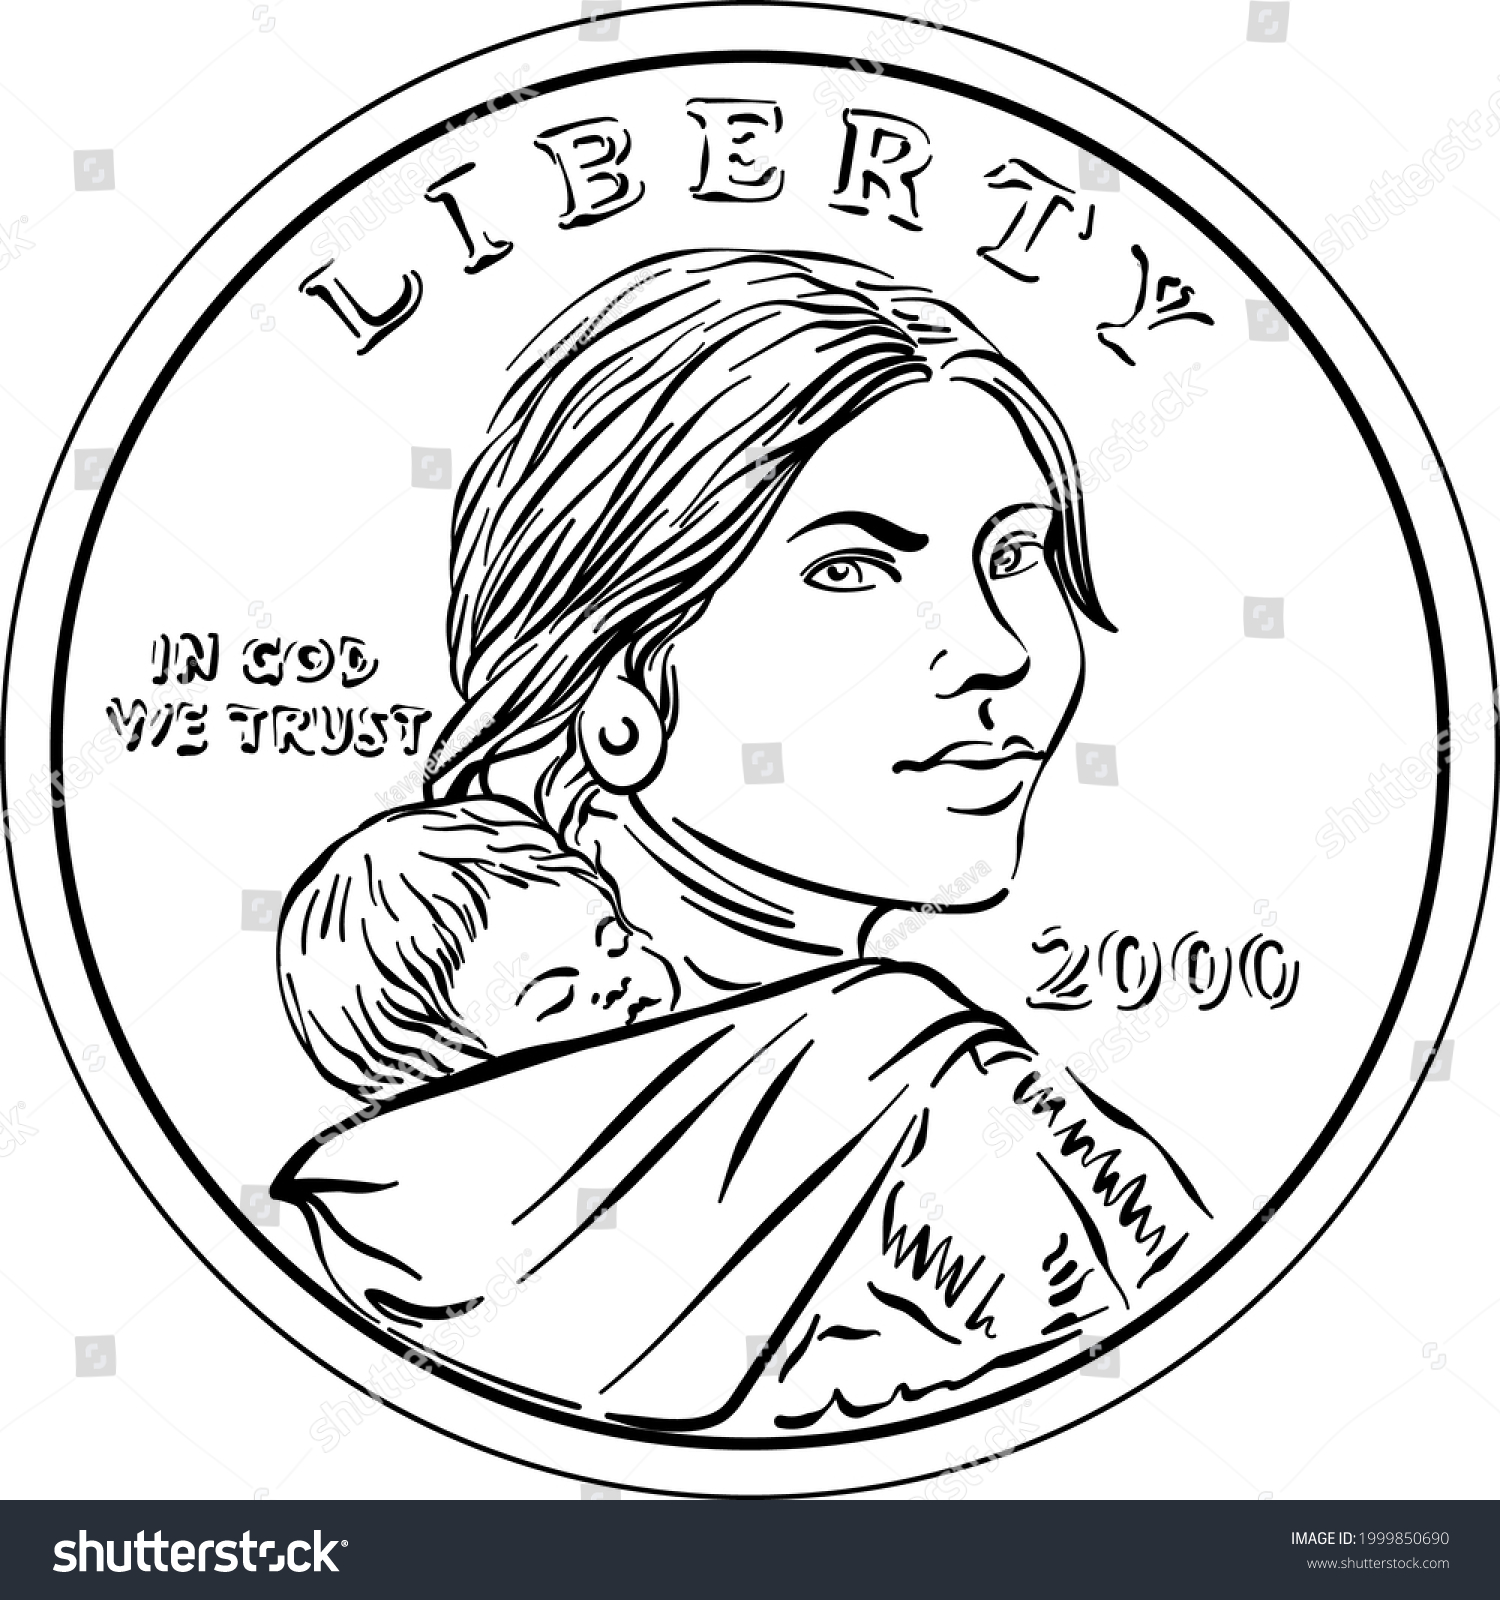 Sacagawea mais de ilustraããµes e desenhos stock licenciãveis e livres de direitos